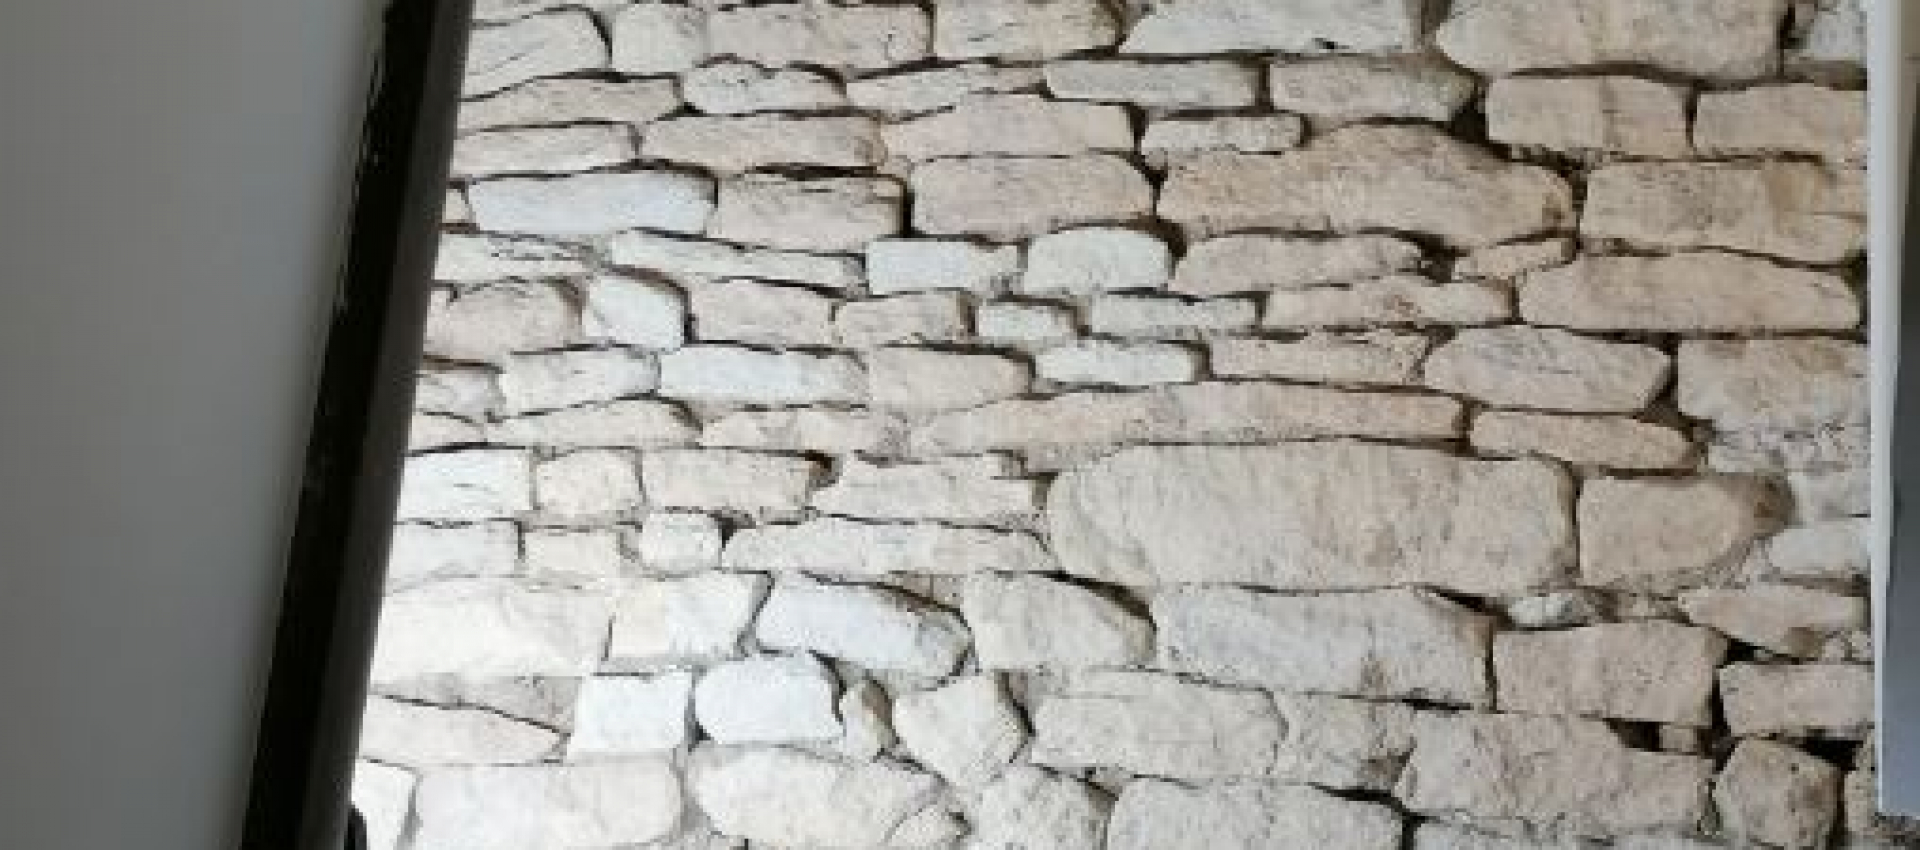 Aérogommage de mur en pierres